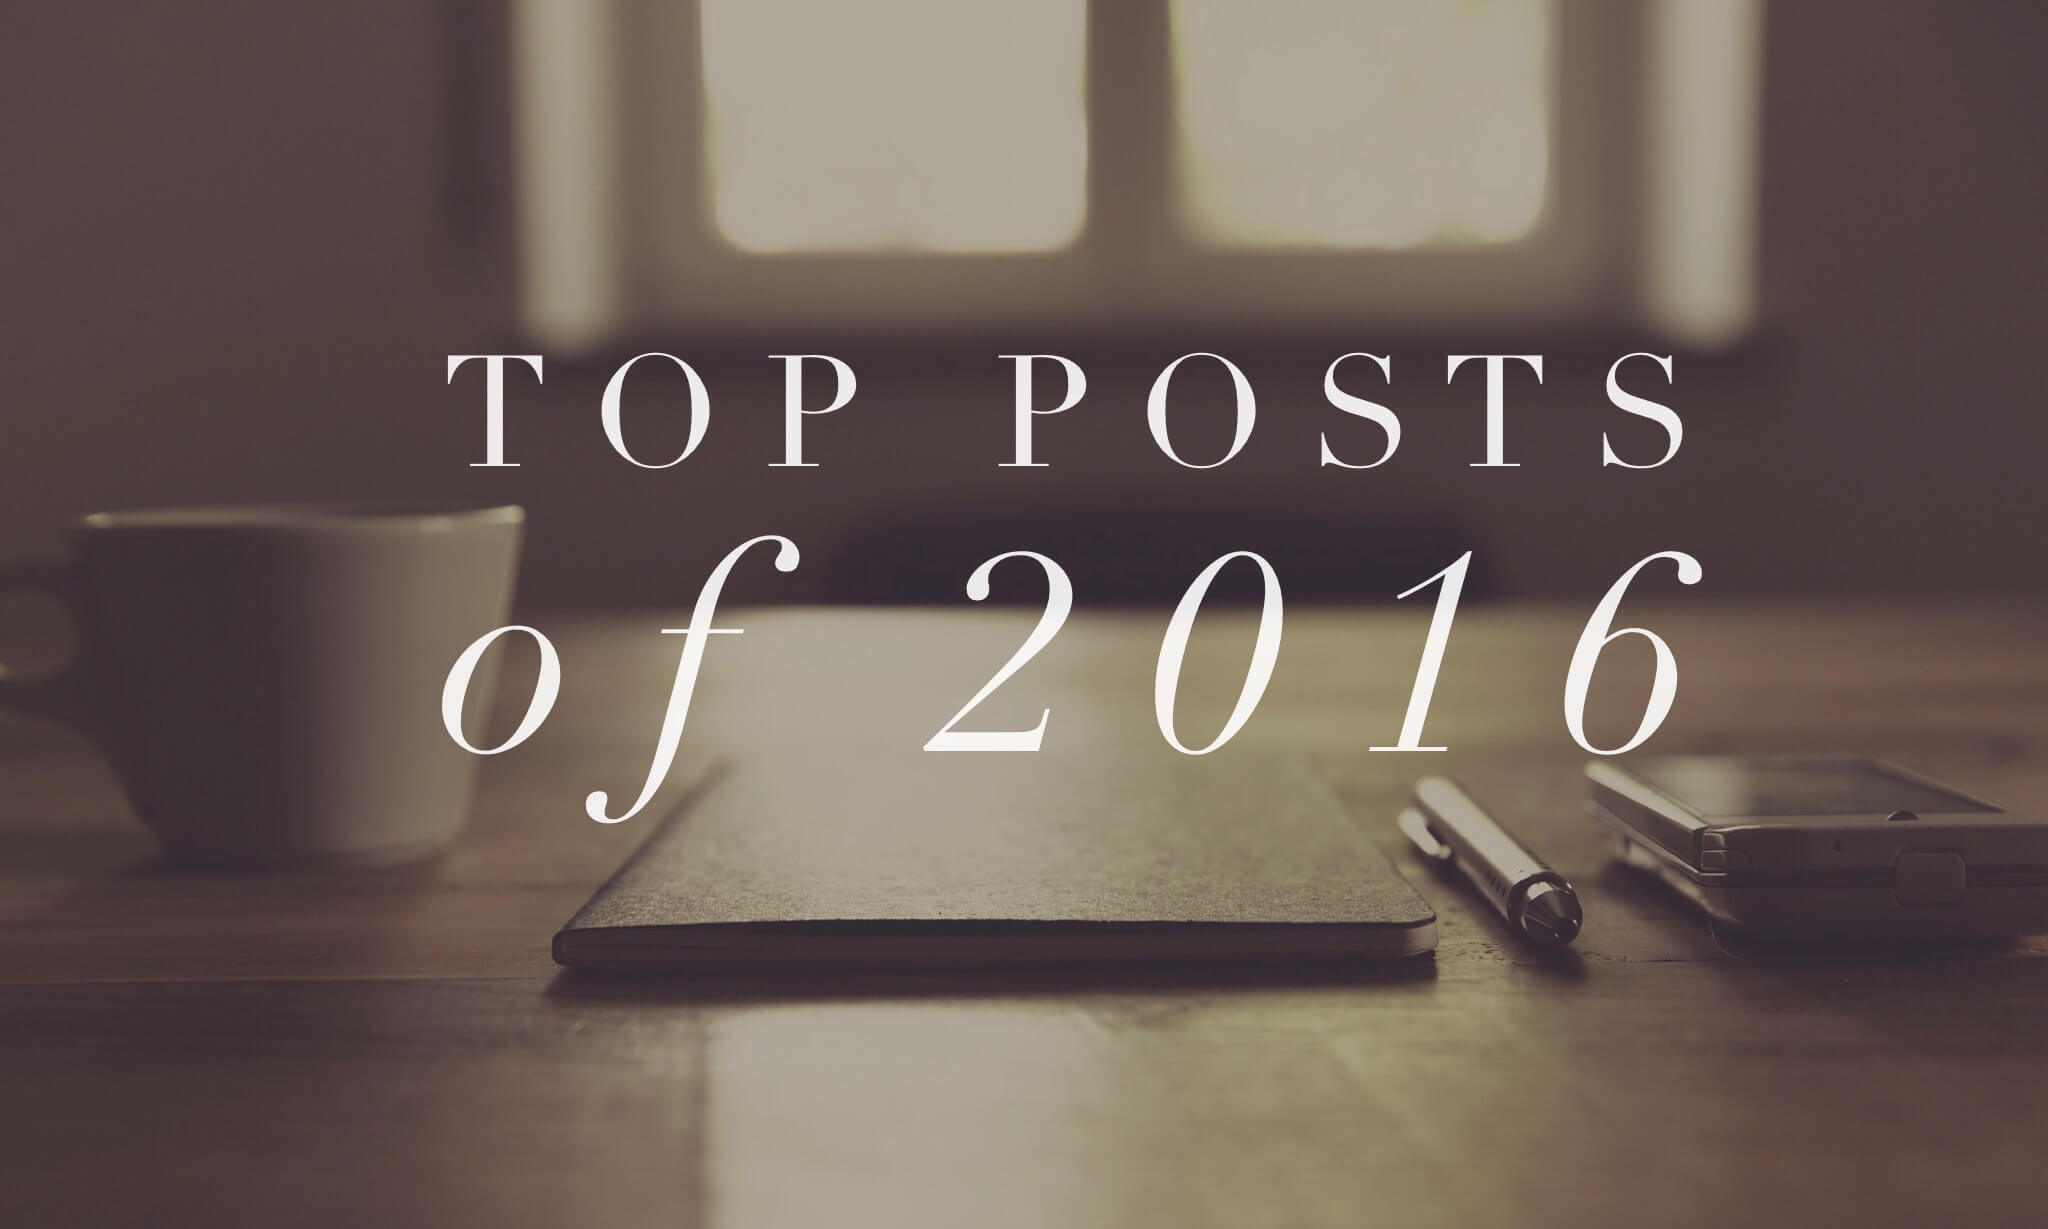 ProPreacher's top posts of 2016